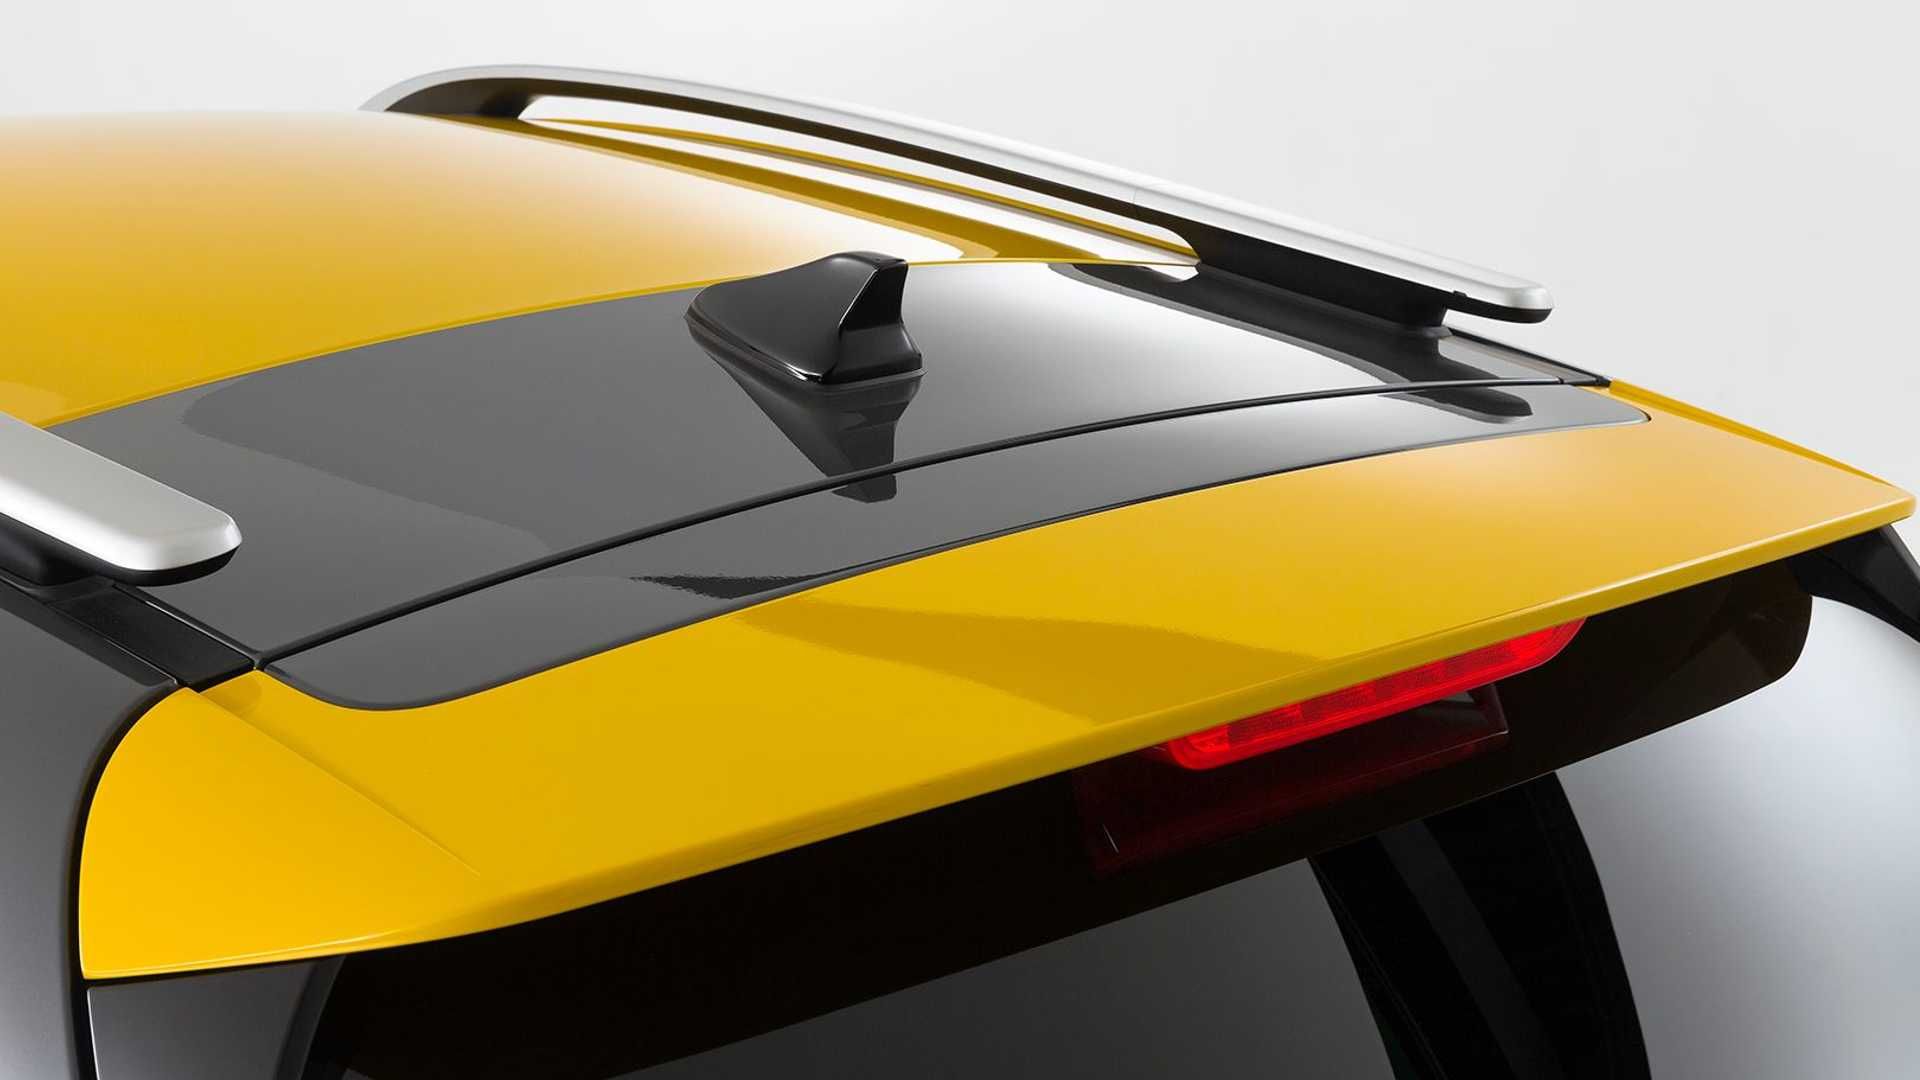 نمای سقف کراس اور / Crossover کیا استونیک جی تی / 2021 Kia Stonic GT Line با طرح دو رنگ سیاه و زرد